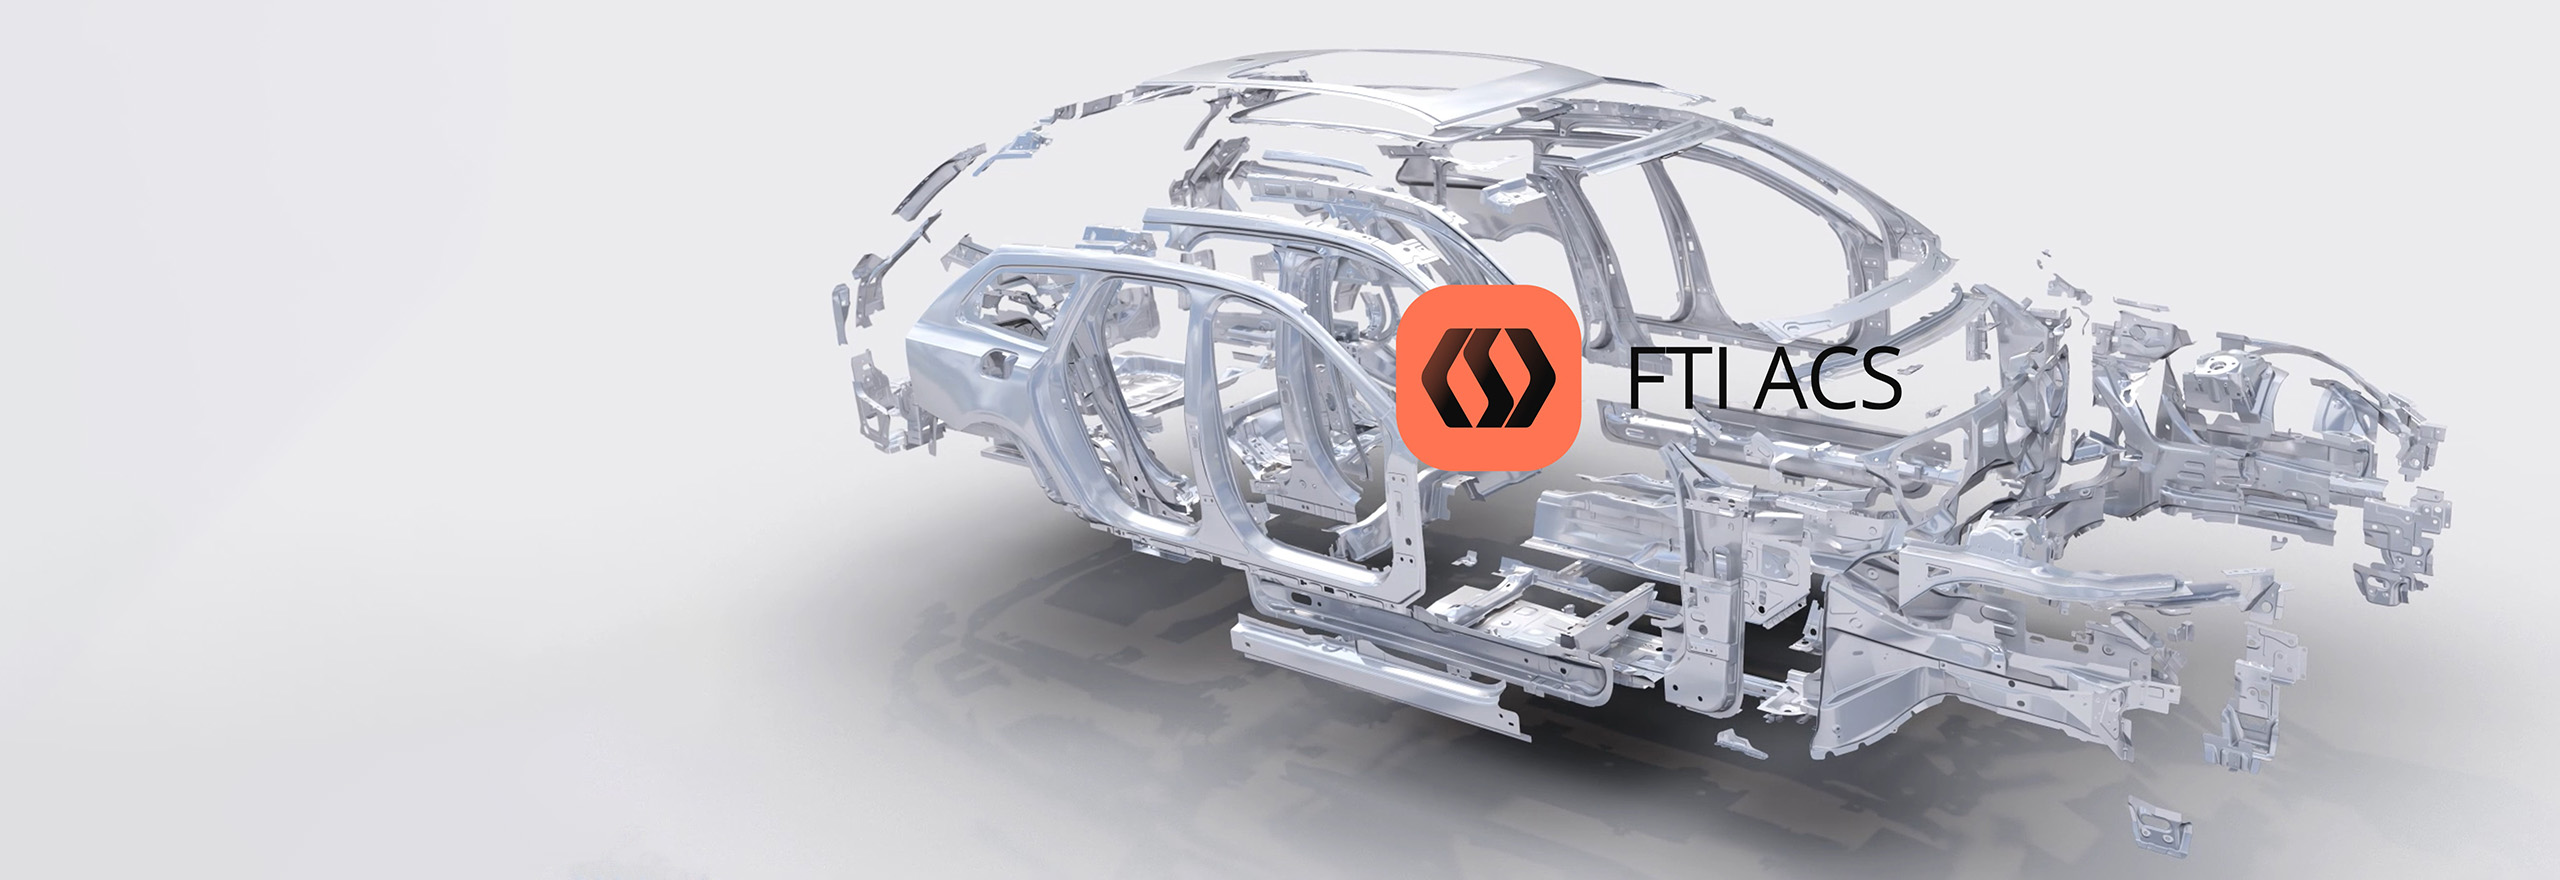 Software de chapa metálica FTI ACS para a indústria automotiva - simulação de peças automotivas explodidas